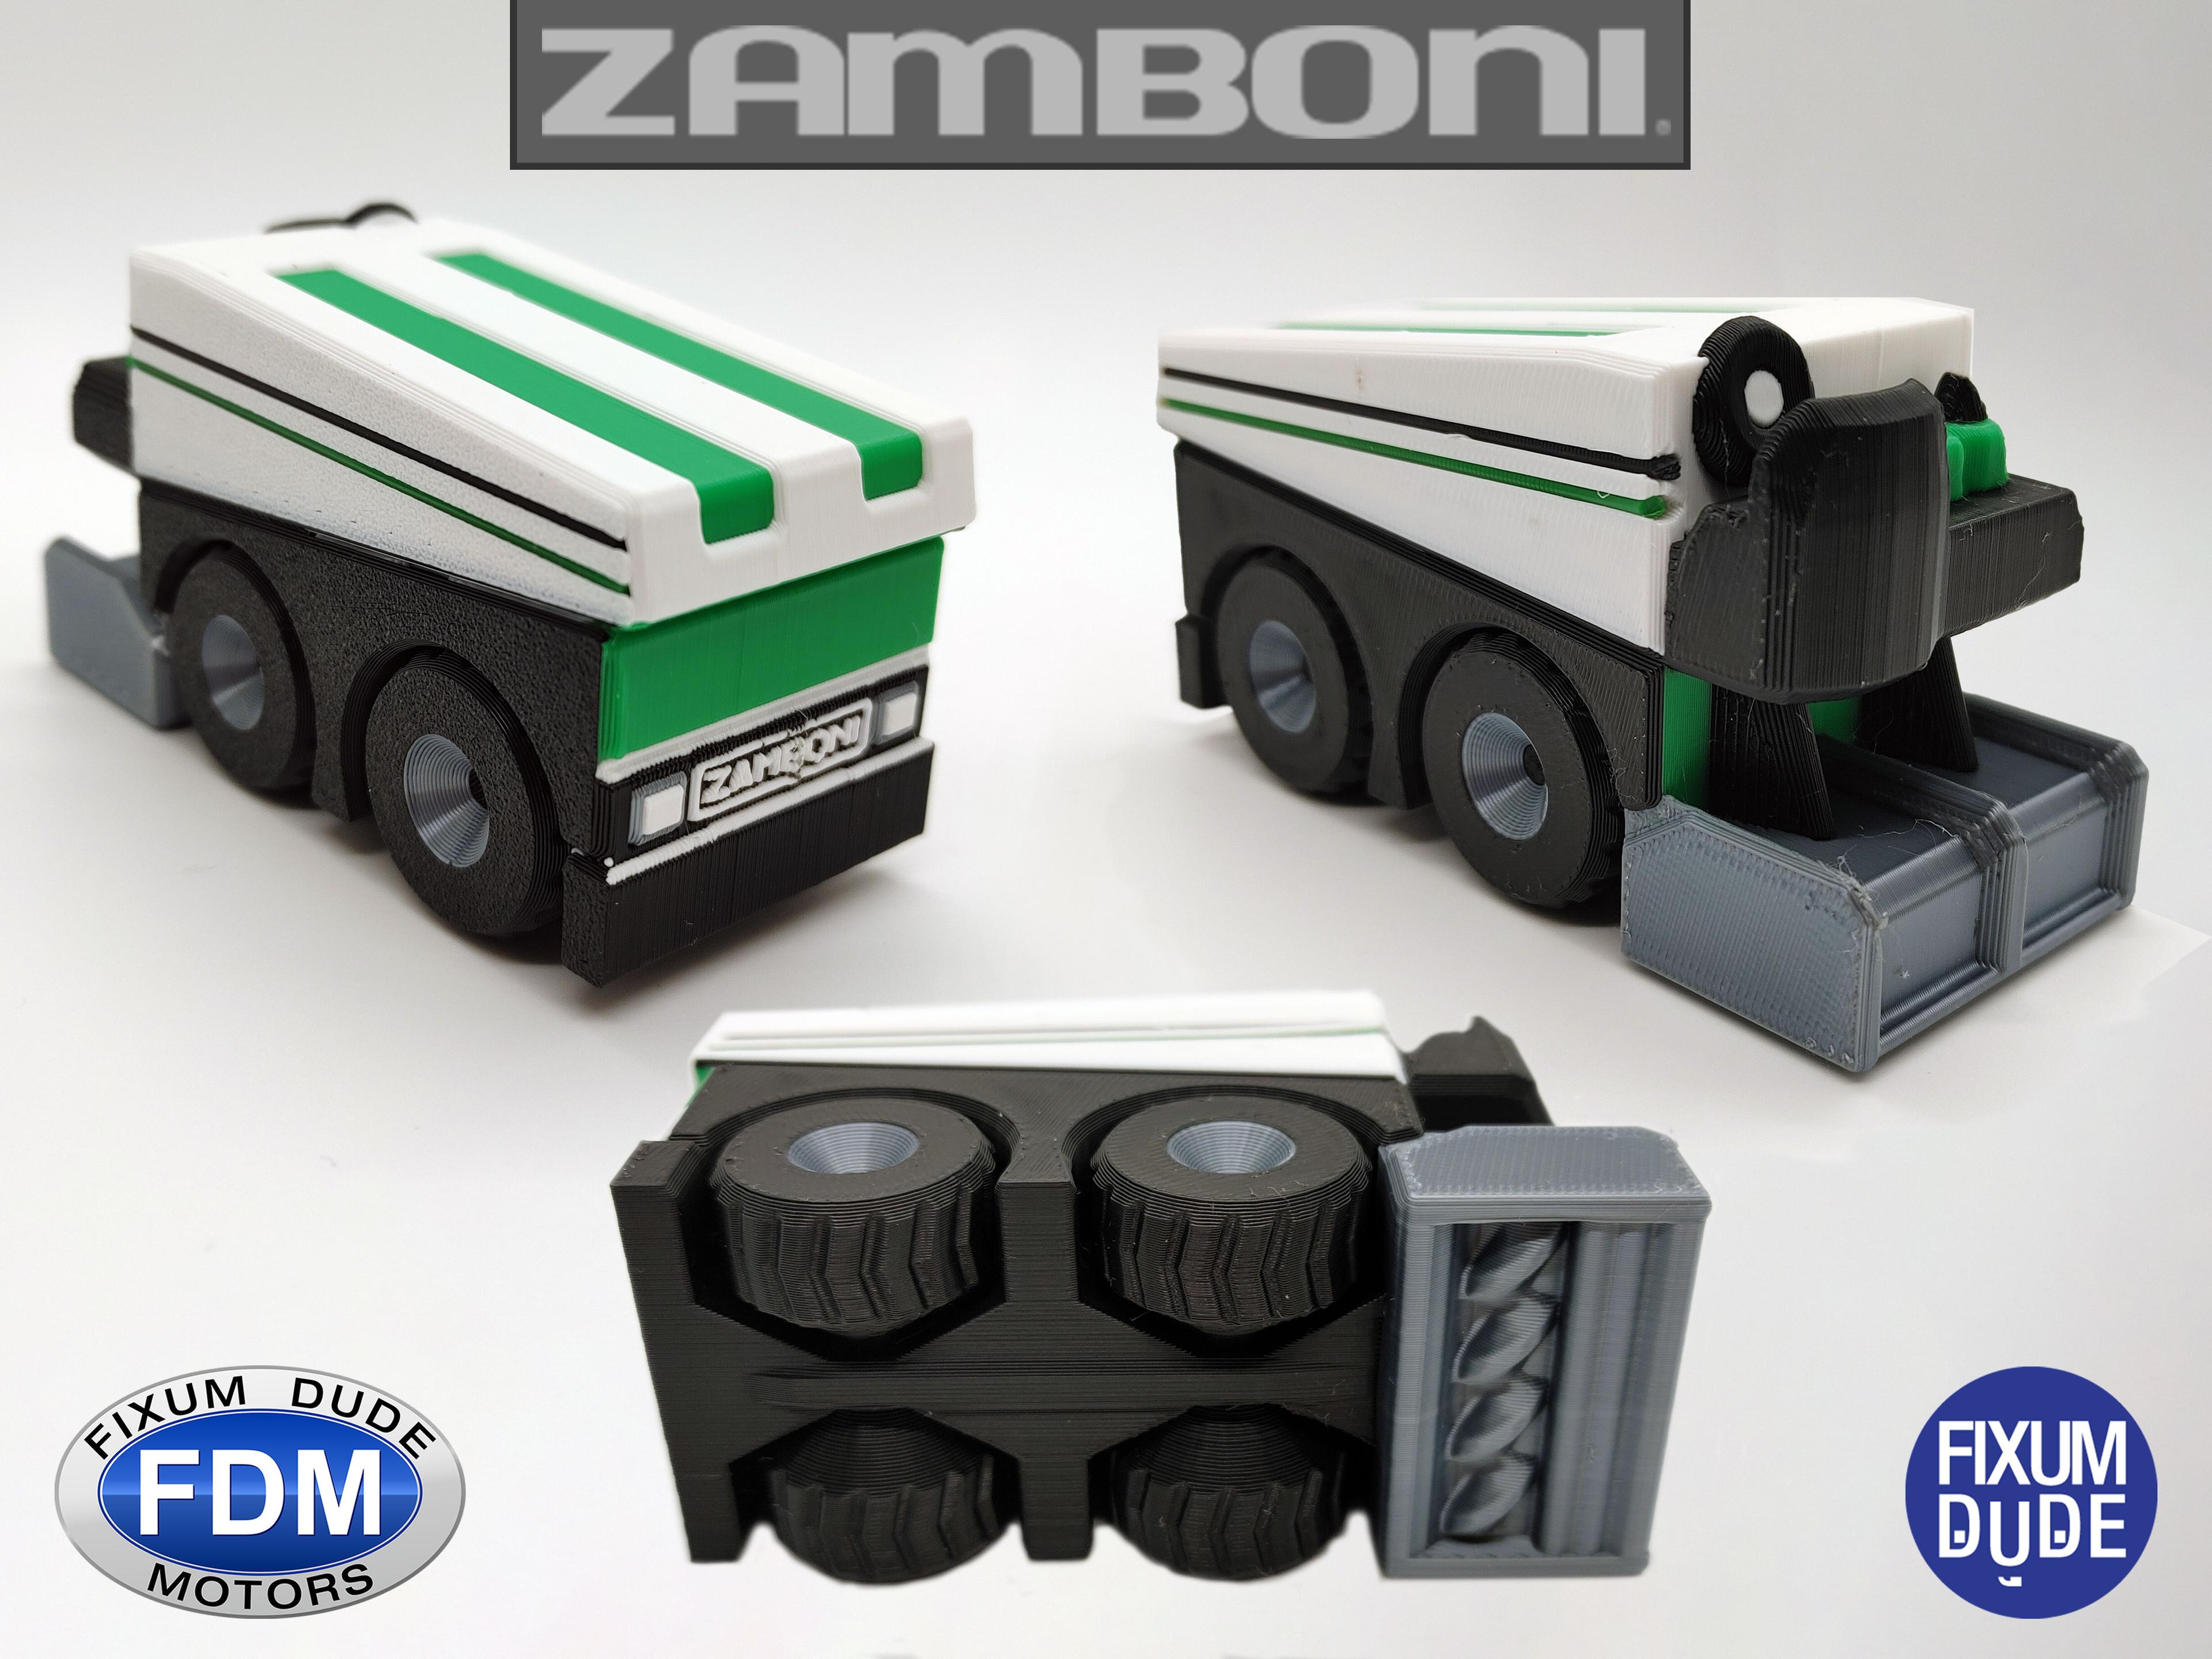  Fixum Dude Motors PiP Zamboni 3d model